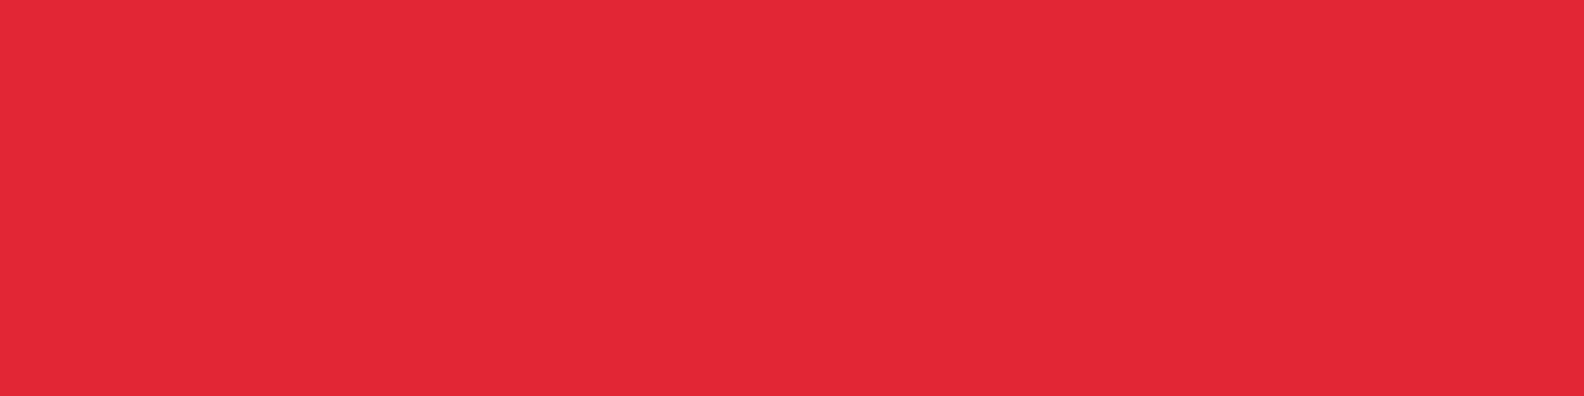 1584x396 Alizarin Crimson Solid Color Background